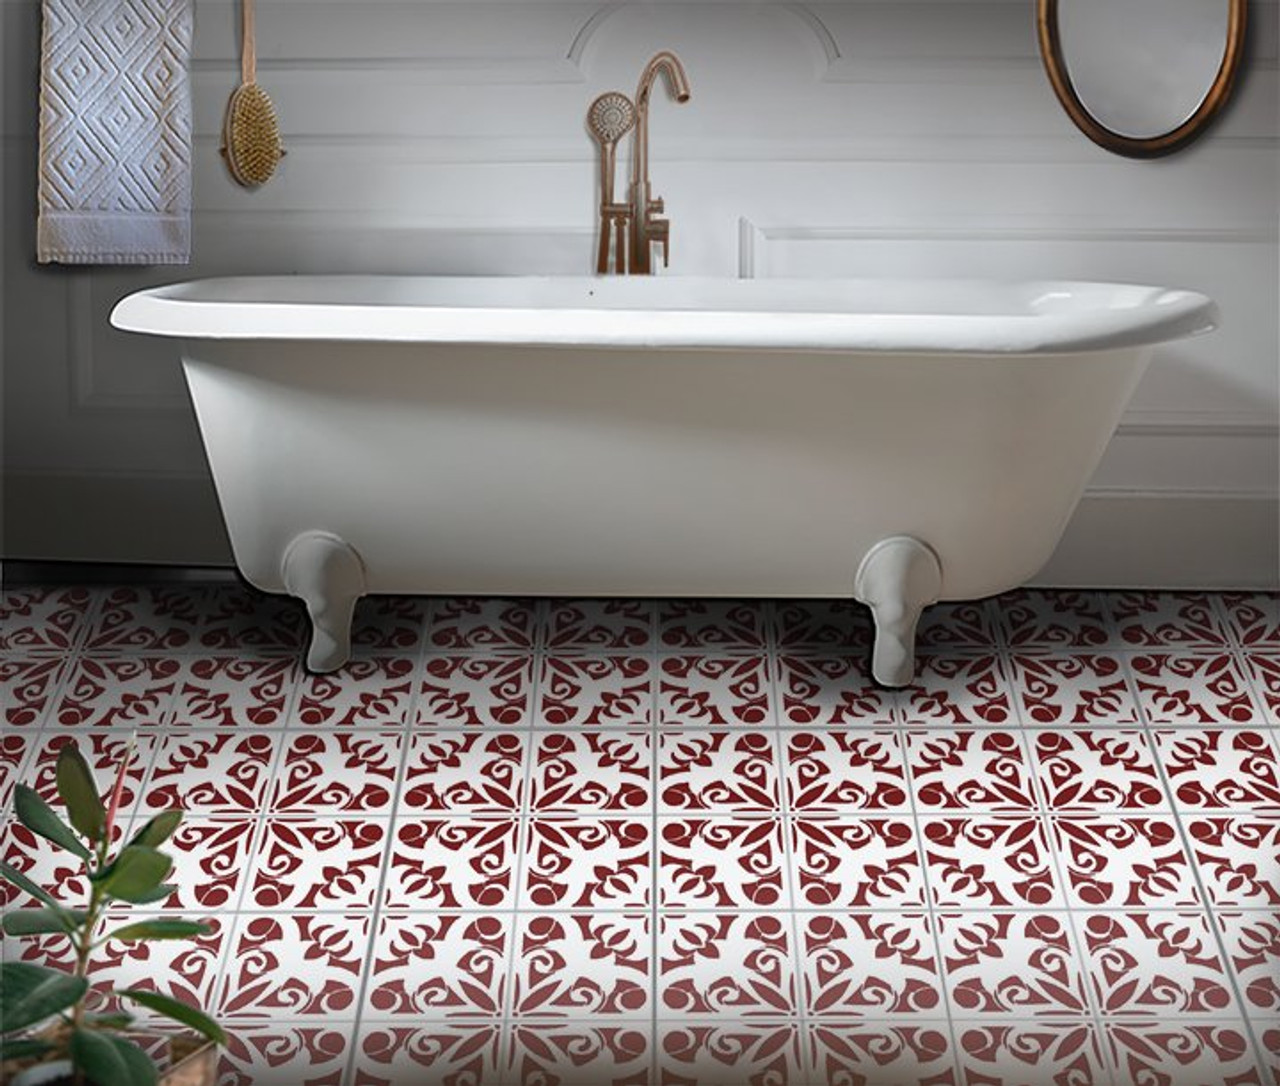 Damask Flower Tile Stencil by StudioR12 | DIY Kitchen Wall Backsplash | Reusable Quarter Pattern & Bathroom Floor | Select Size